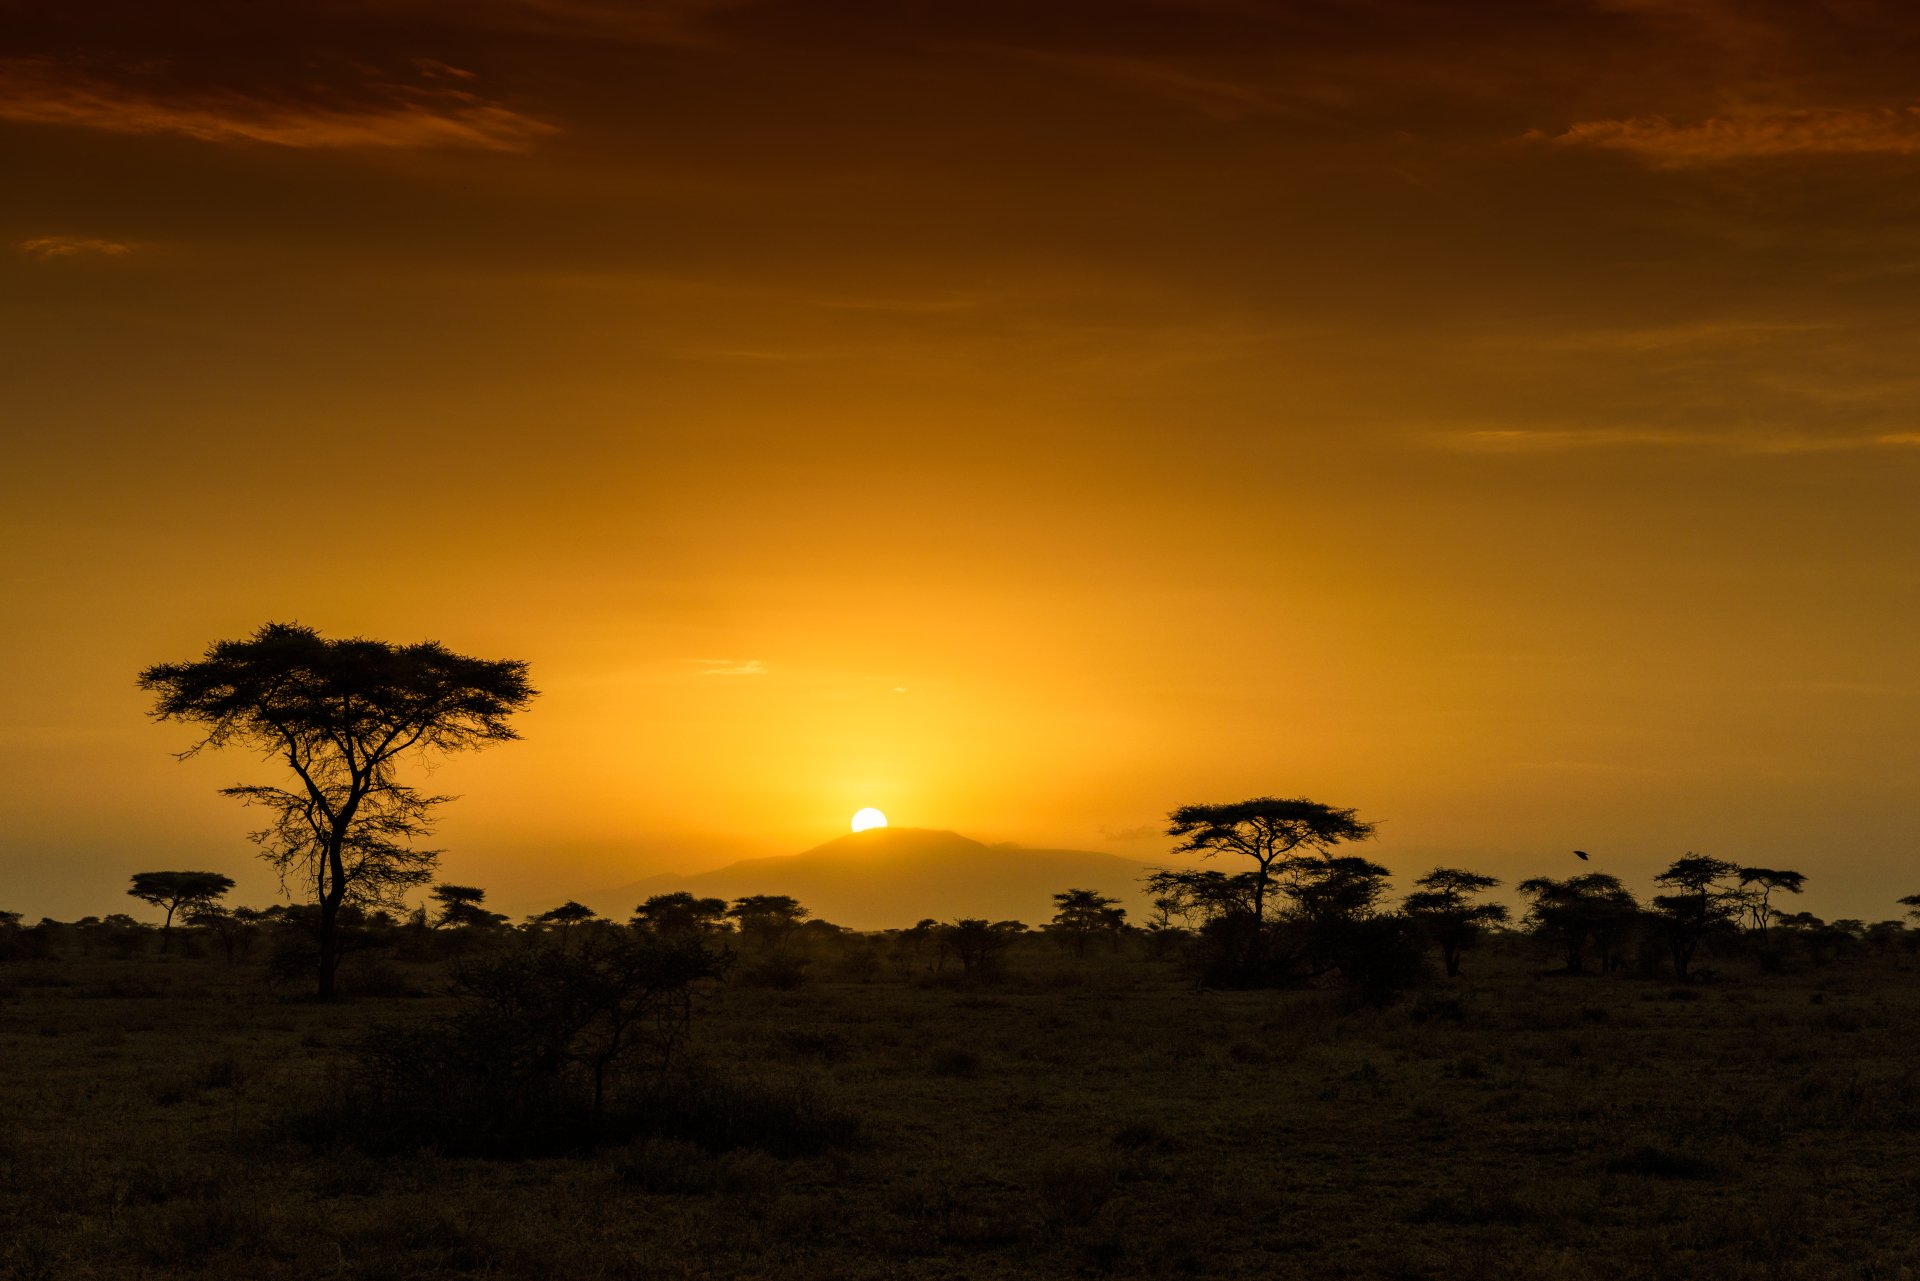 Саванной восточной африки. Саванны Танзании. Национальный парк Серенгети, Танзания закат. Восточная Африка Танзания. Закат в саванне.